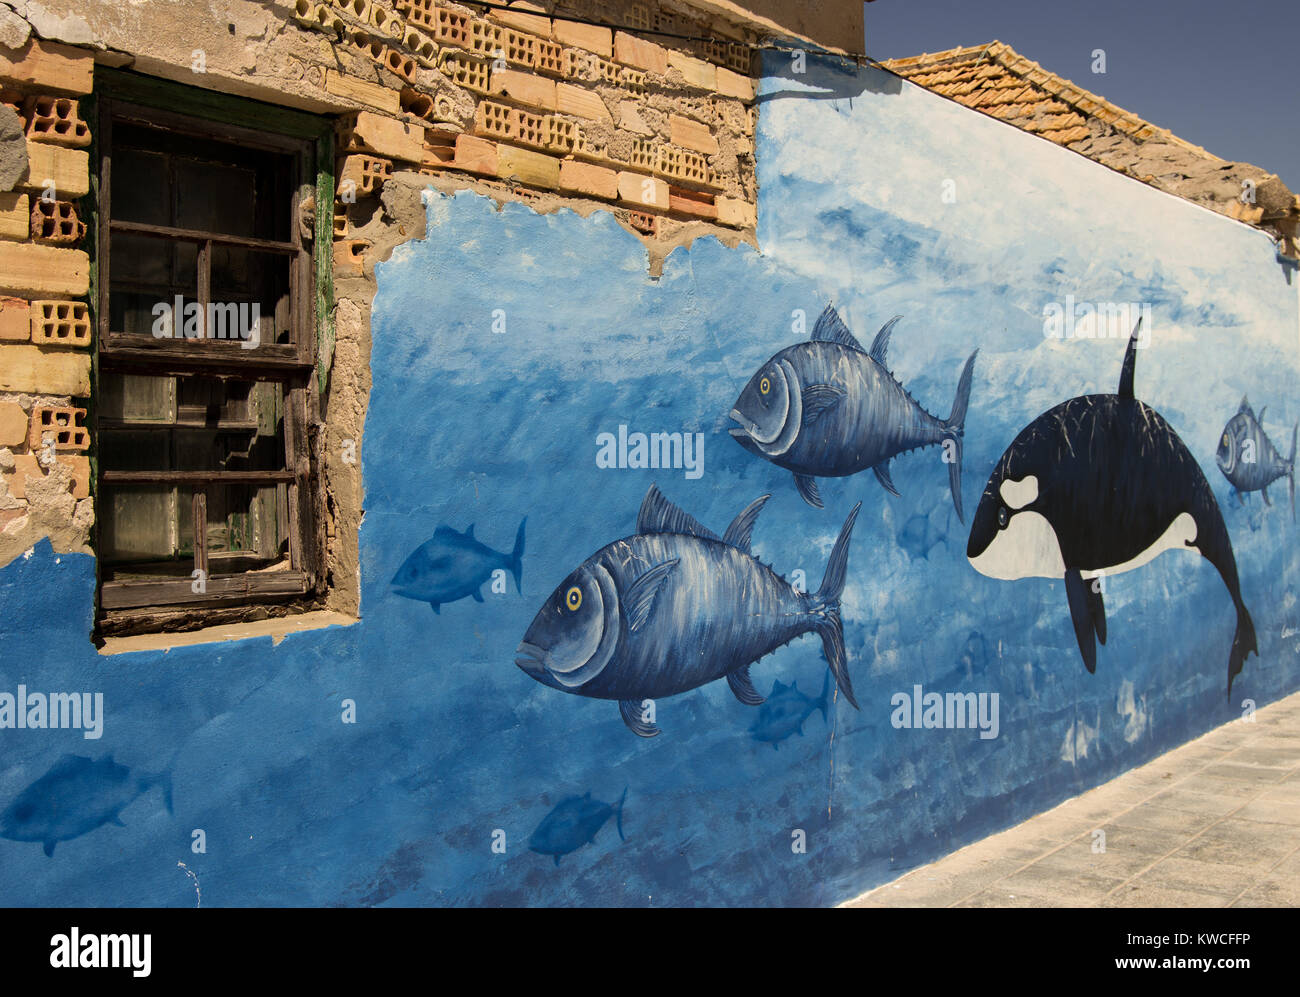 Cadix, Espagne - 30 avril 2018 : peinture marines de poissons et l'épaulard ou orque sur le mur du port de Sancti Petri, Andalousie. Banque D'Images